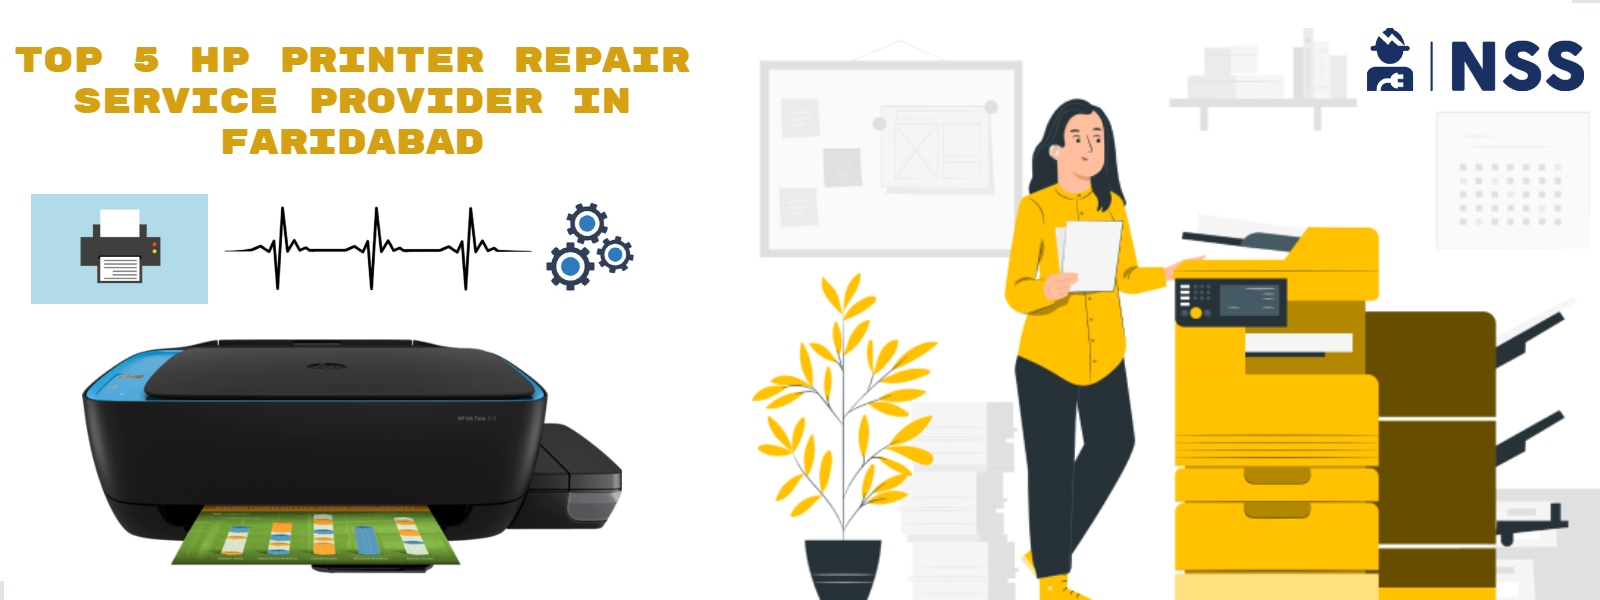 Top 5 HP Repair Printer Service Provider In Faridabad